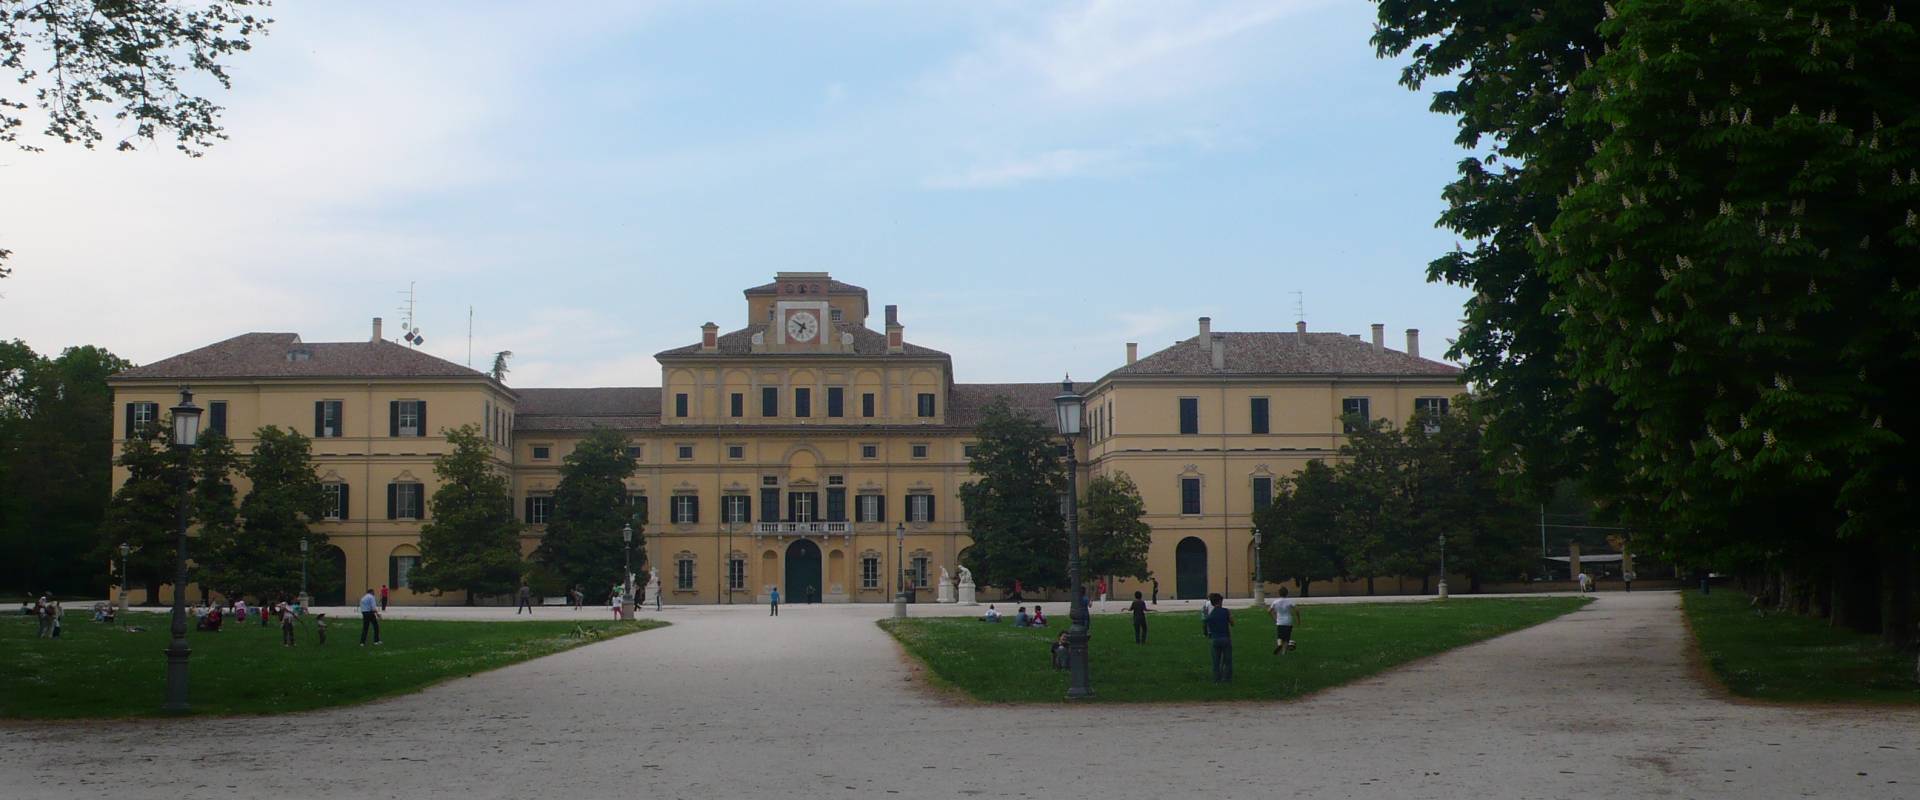 Palazzo ducale 1 - Parma foto di RatMan1234